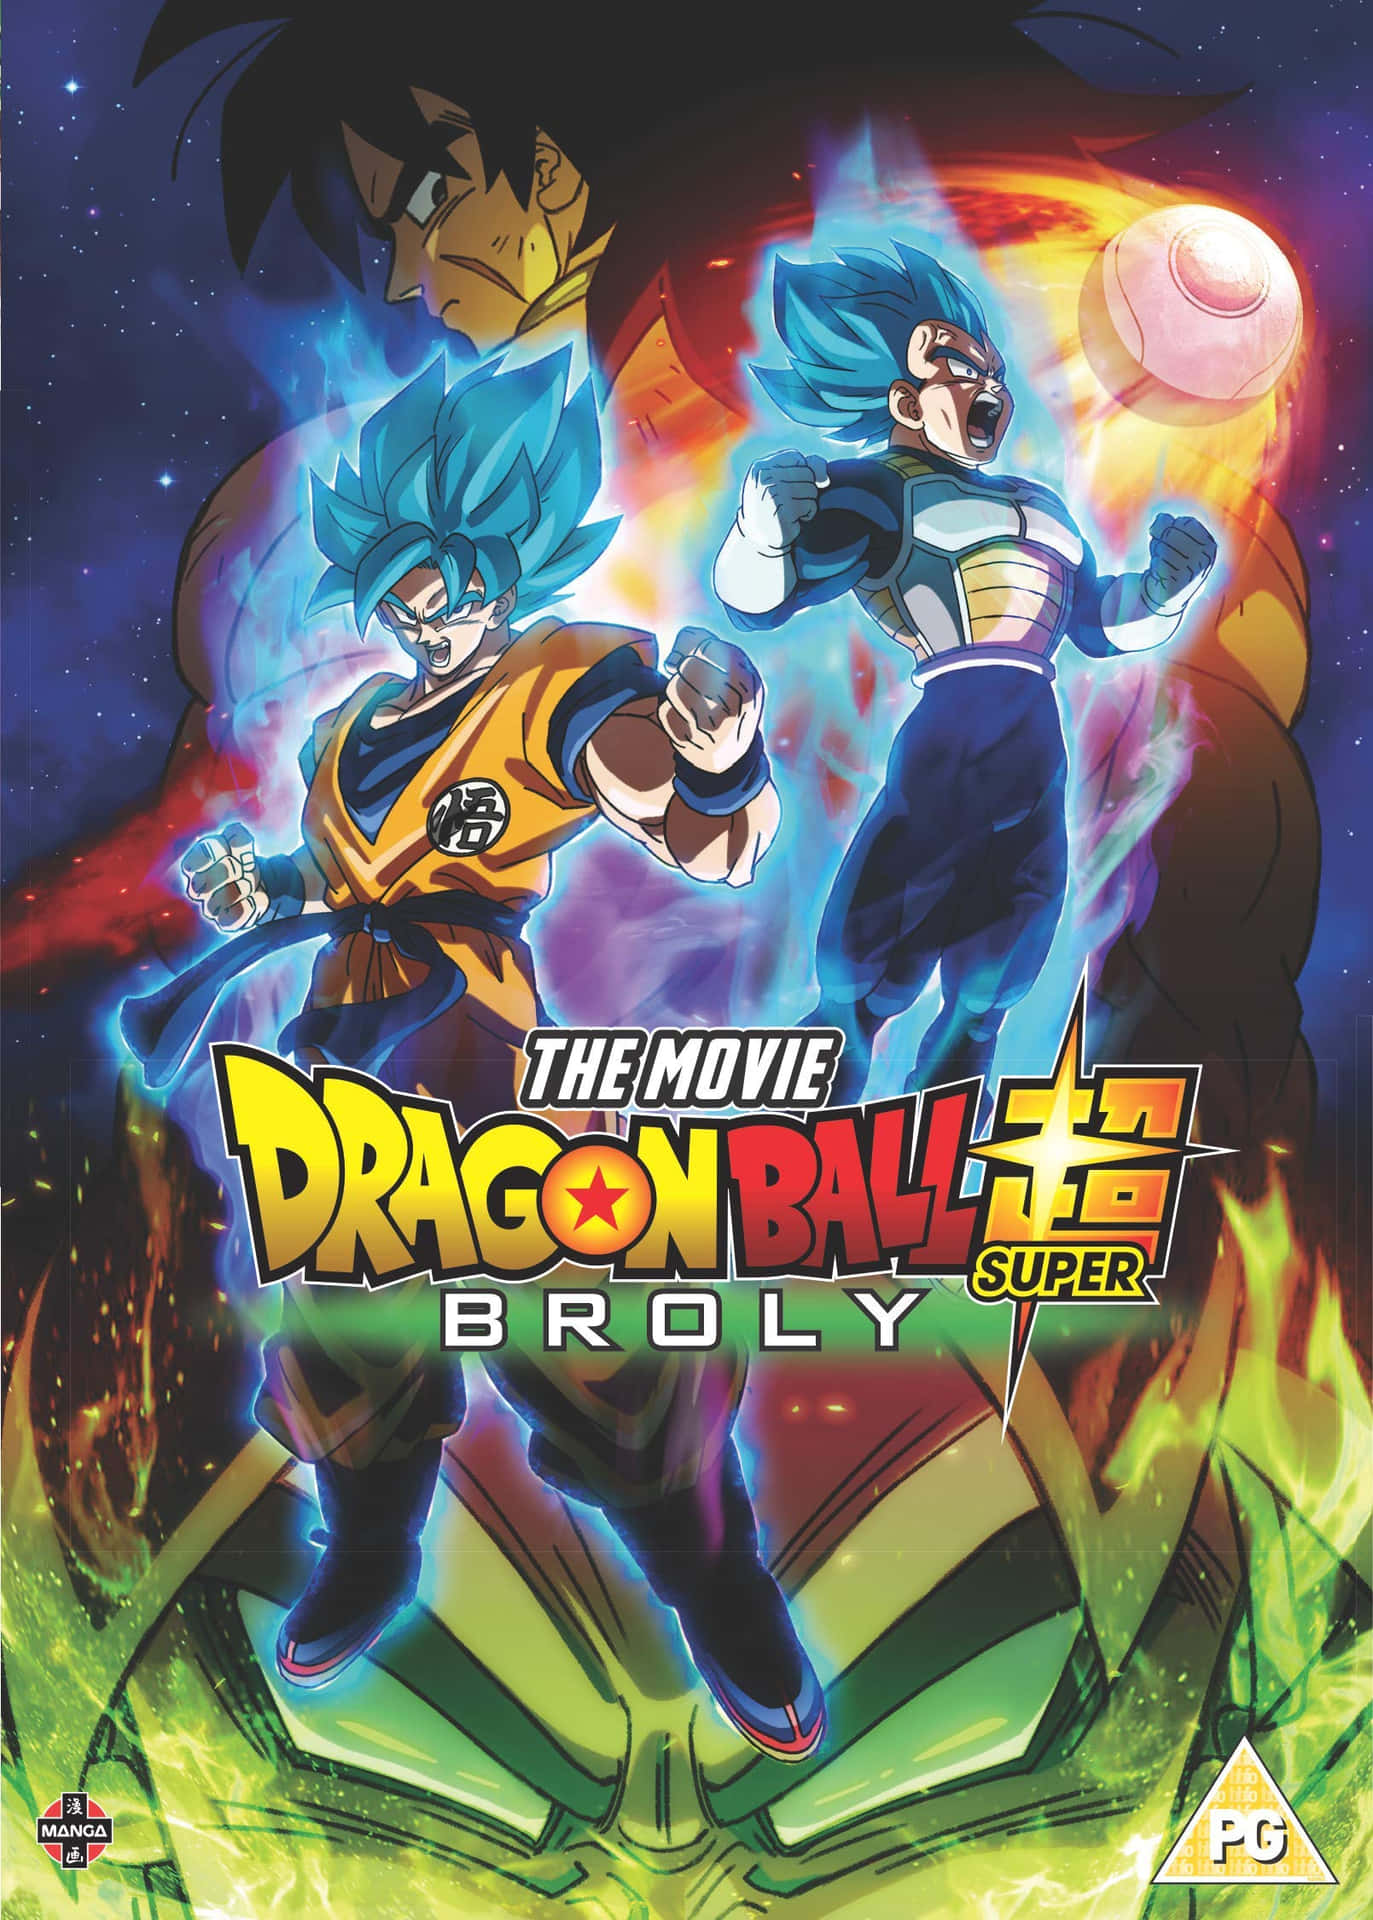 Gokuemprende Su Viaje Hacia El Mundo De Dragon Ball. Fondo de pantalla